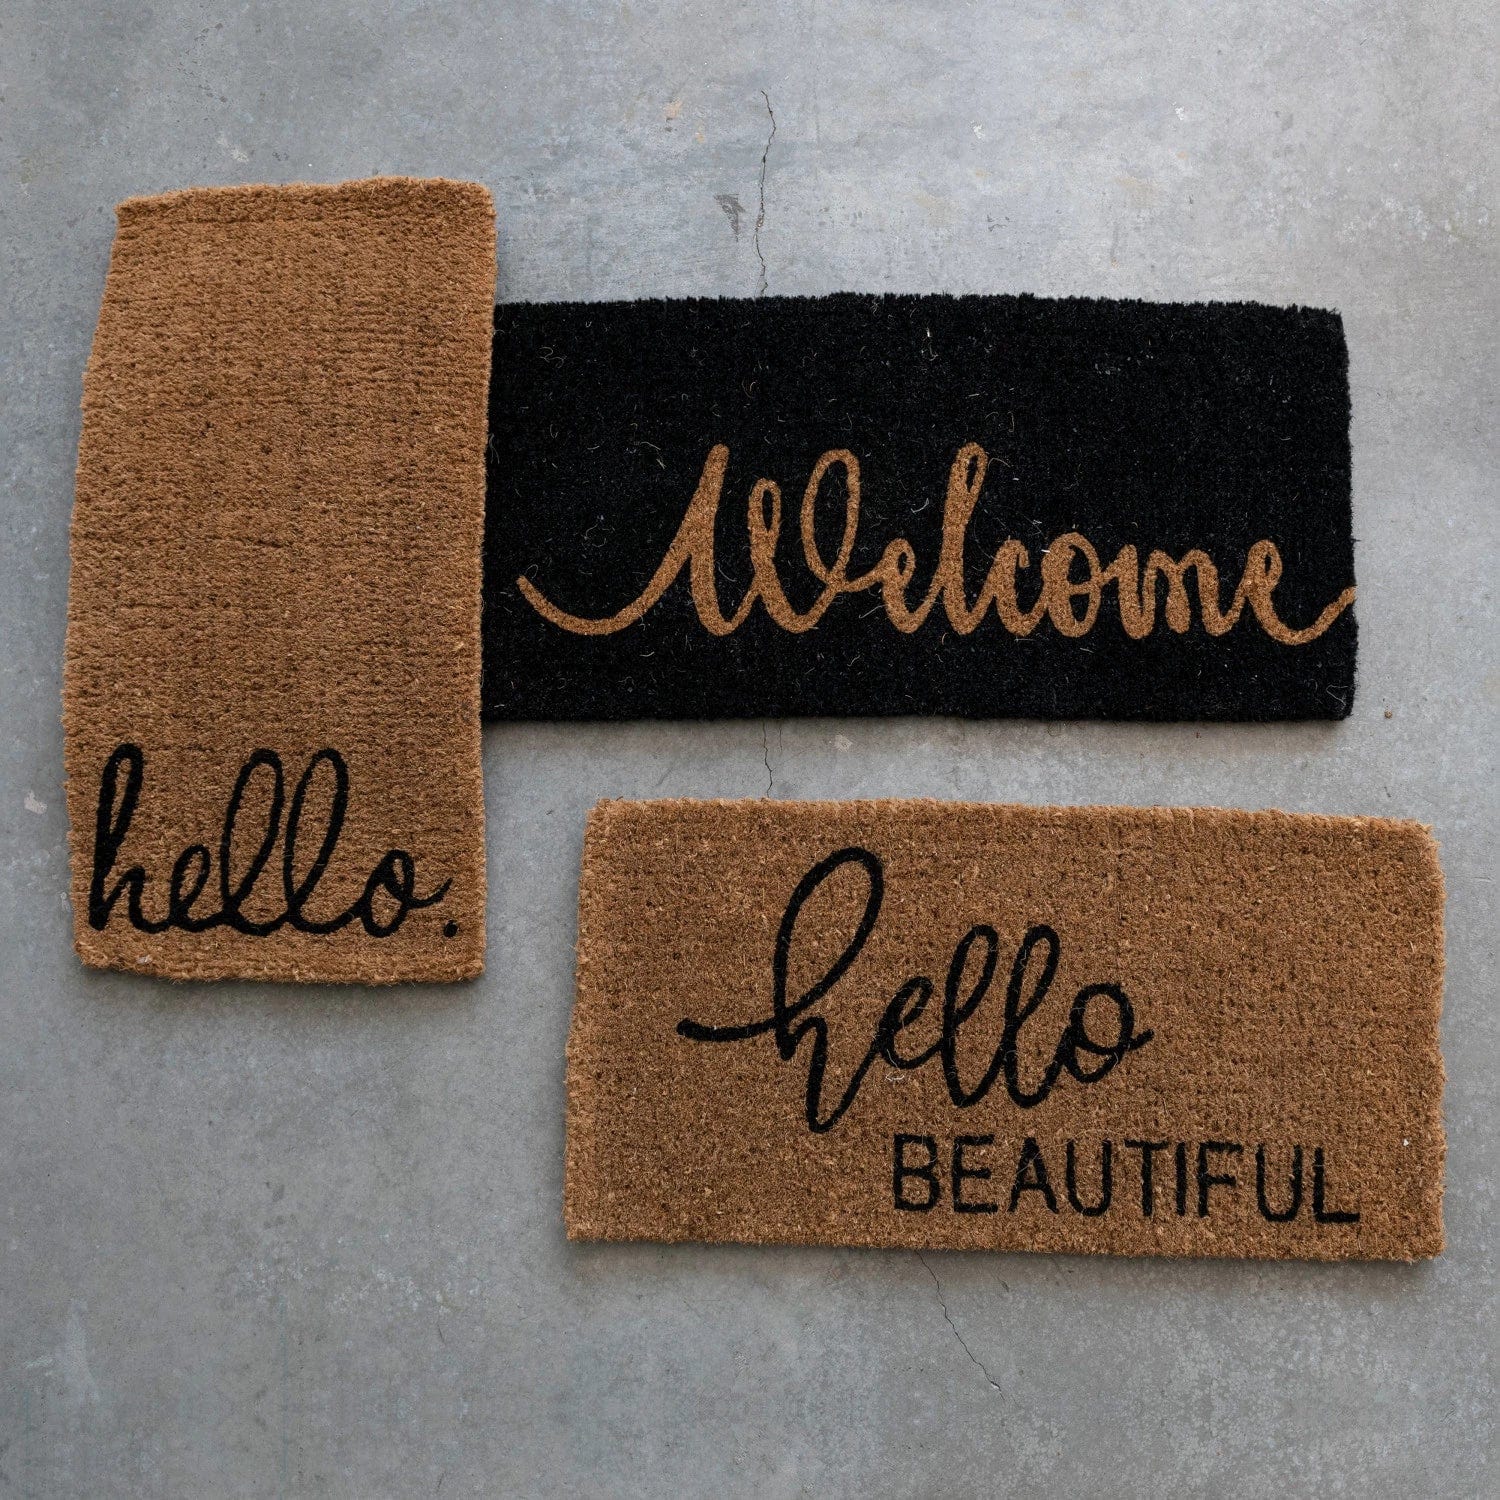 Creative Co-Op Creative Co-op "Hello Beautiful" Natural Coir Doormat - Little Miss Muffin Children & Home